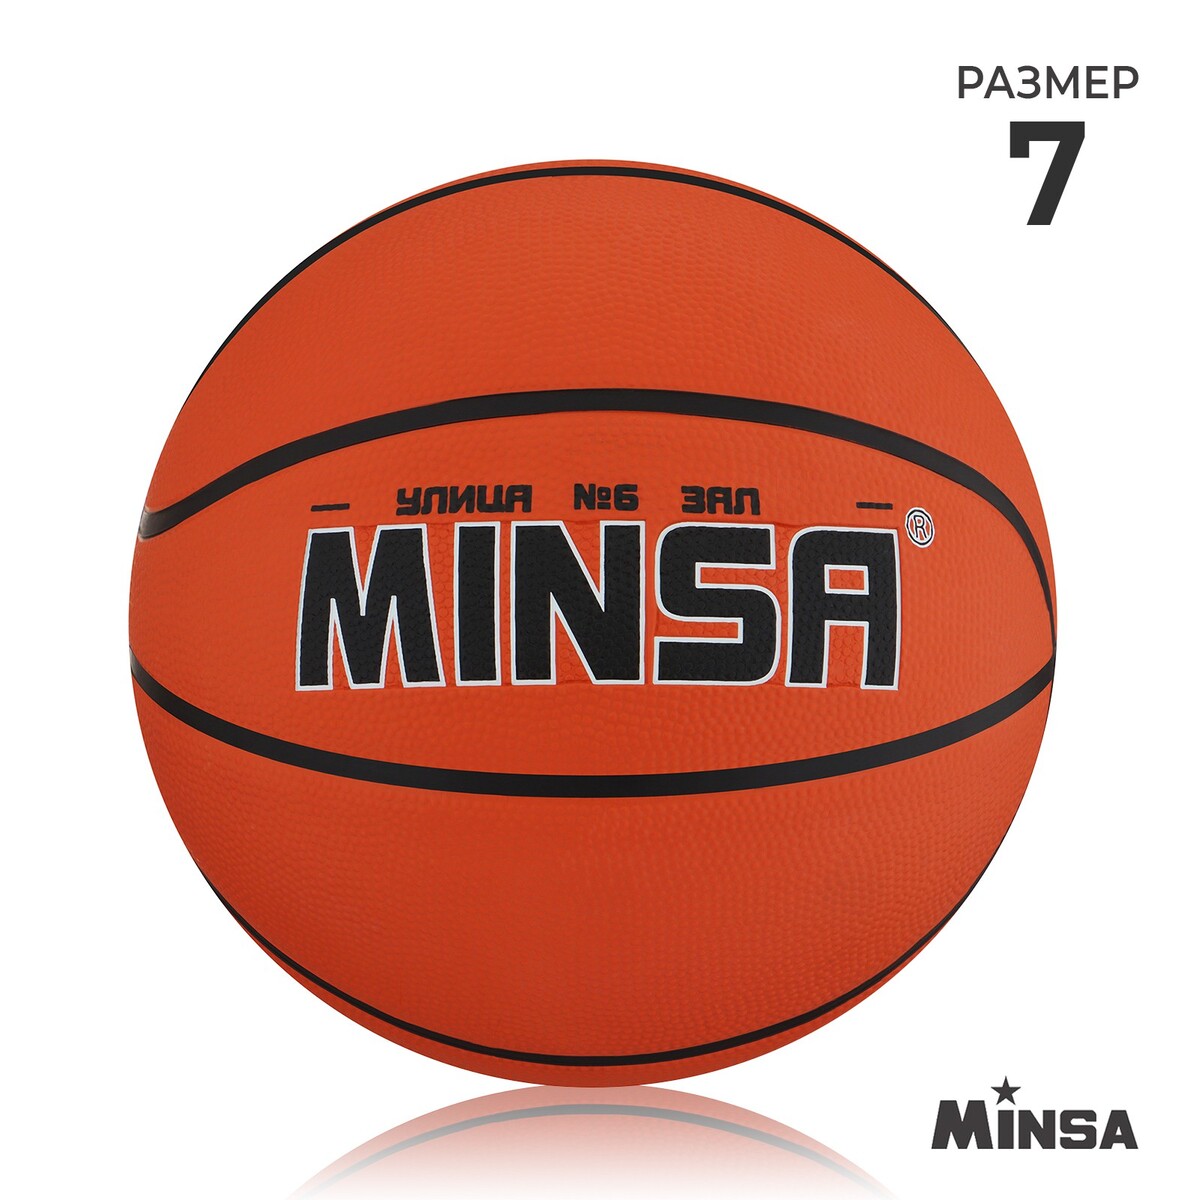 Мяч баскетбольный minsa, пвх, клееный, 8 панелей, р. 7 мяч баскетбольный minsa sport пвх клееный 8 панелей р 5